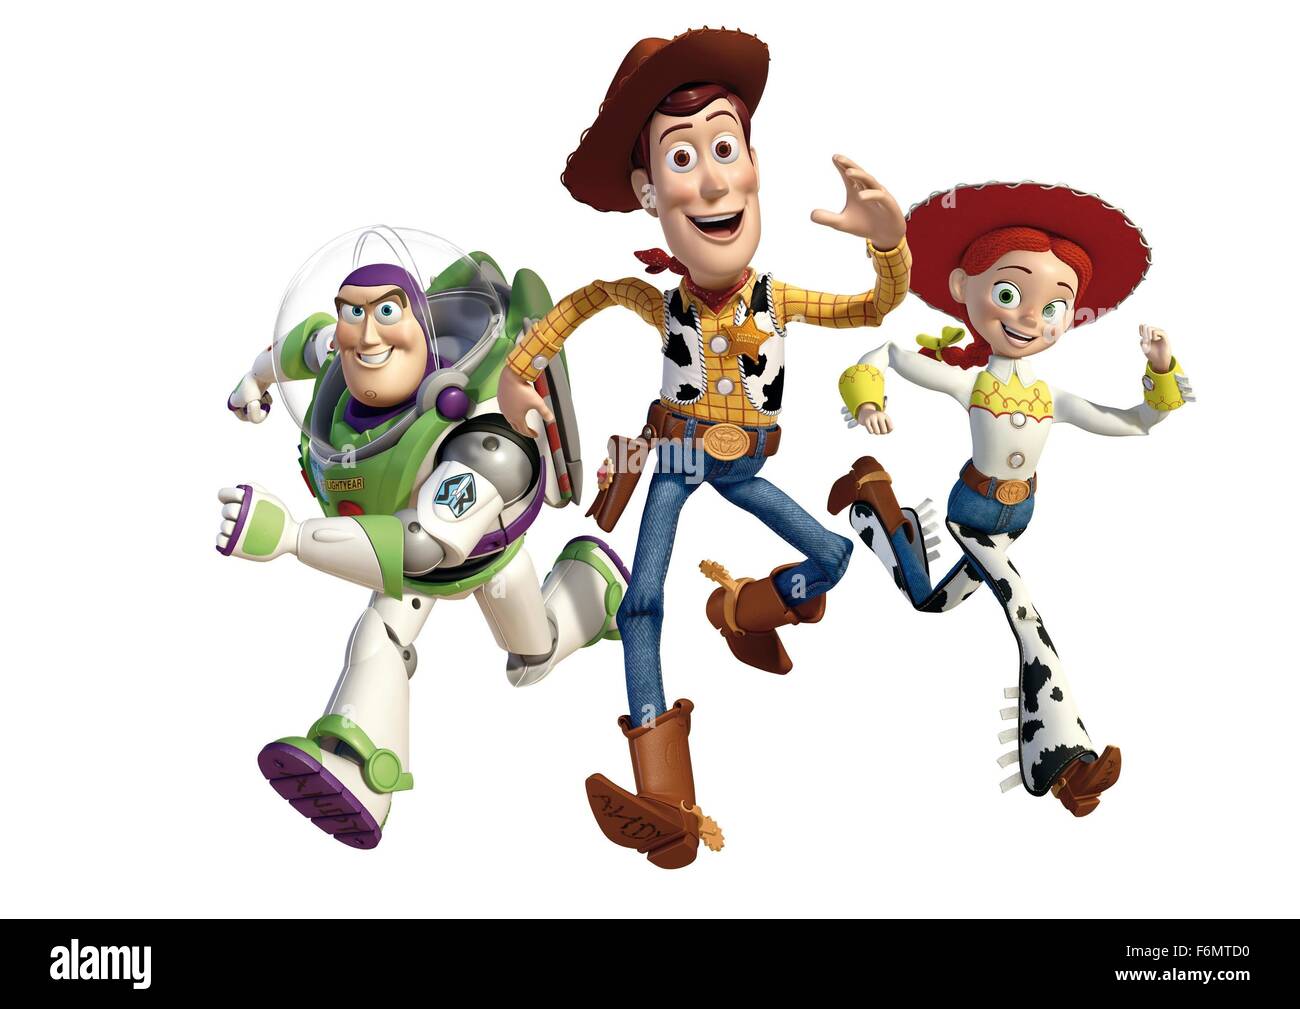 Fecha de lanzamiento: 18 de junio de 2010 PELÍCULA: Toy Story 3 Estudio:  Disney Pixar DIRECTOR: Lee Unkrich parcela: Woody, Buzz, y el resto de sus  amigos del cuadro de juguete se